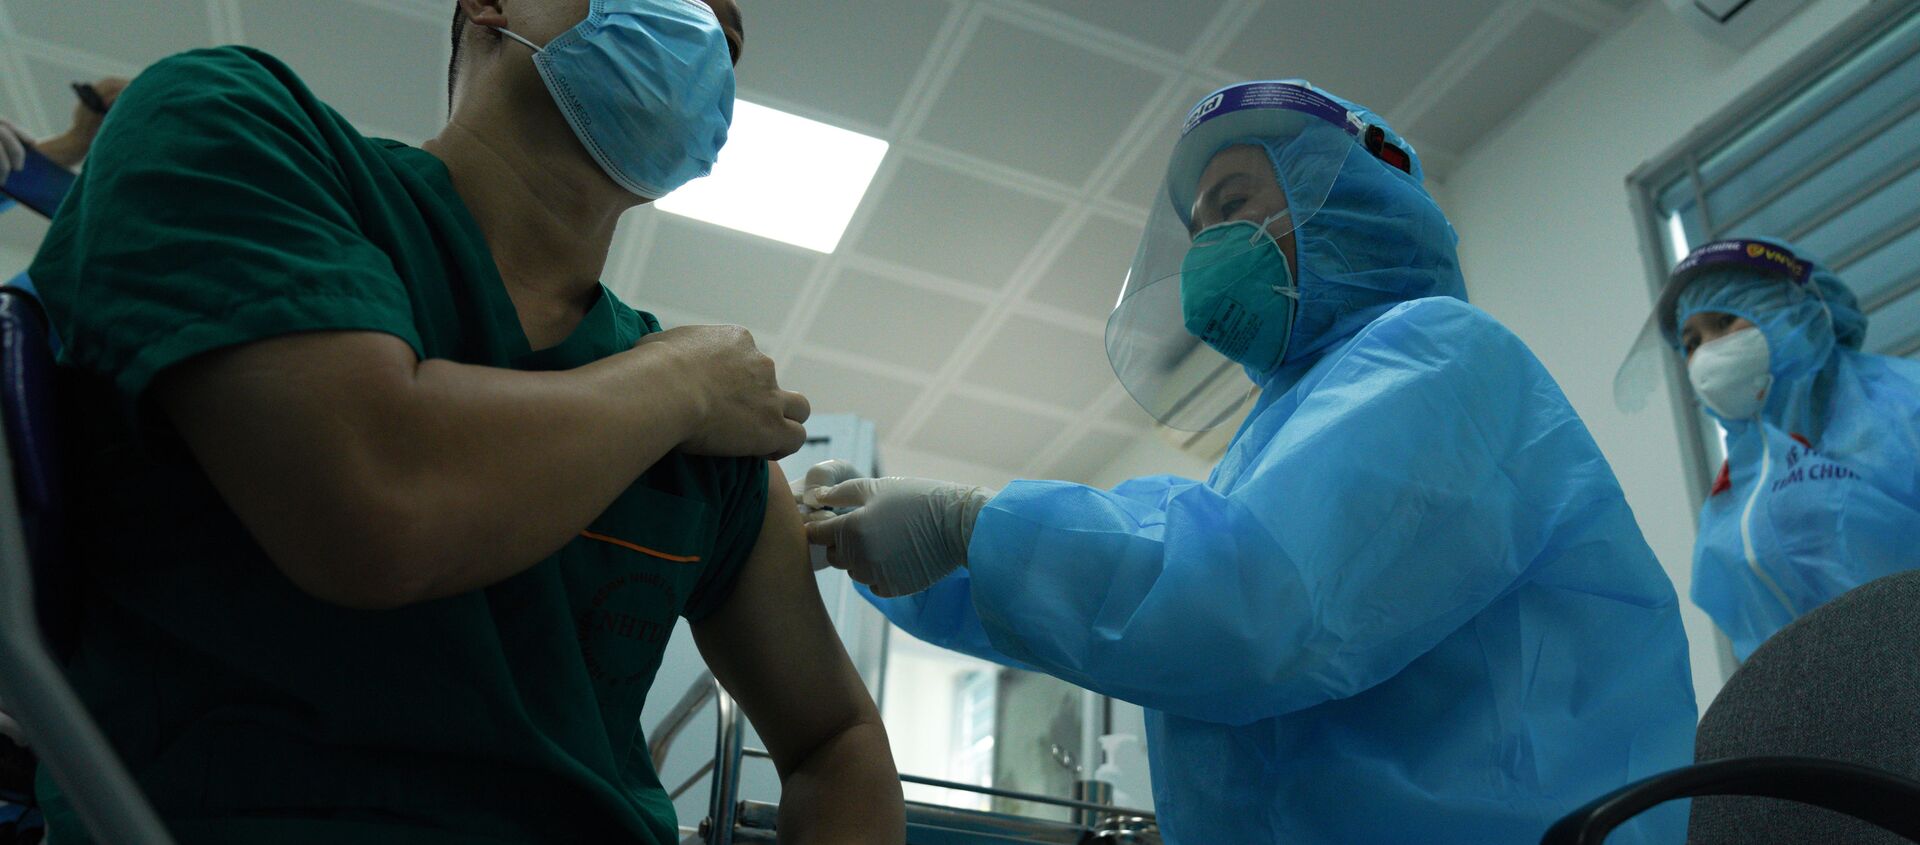 Bệnh nhân đang được tiêm vắc-xin Covid-19 - Sputnik Việt Nam, 1920, 14.03.2021